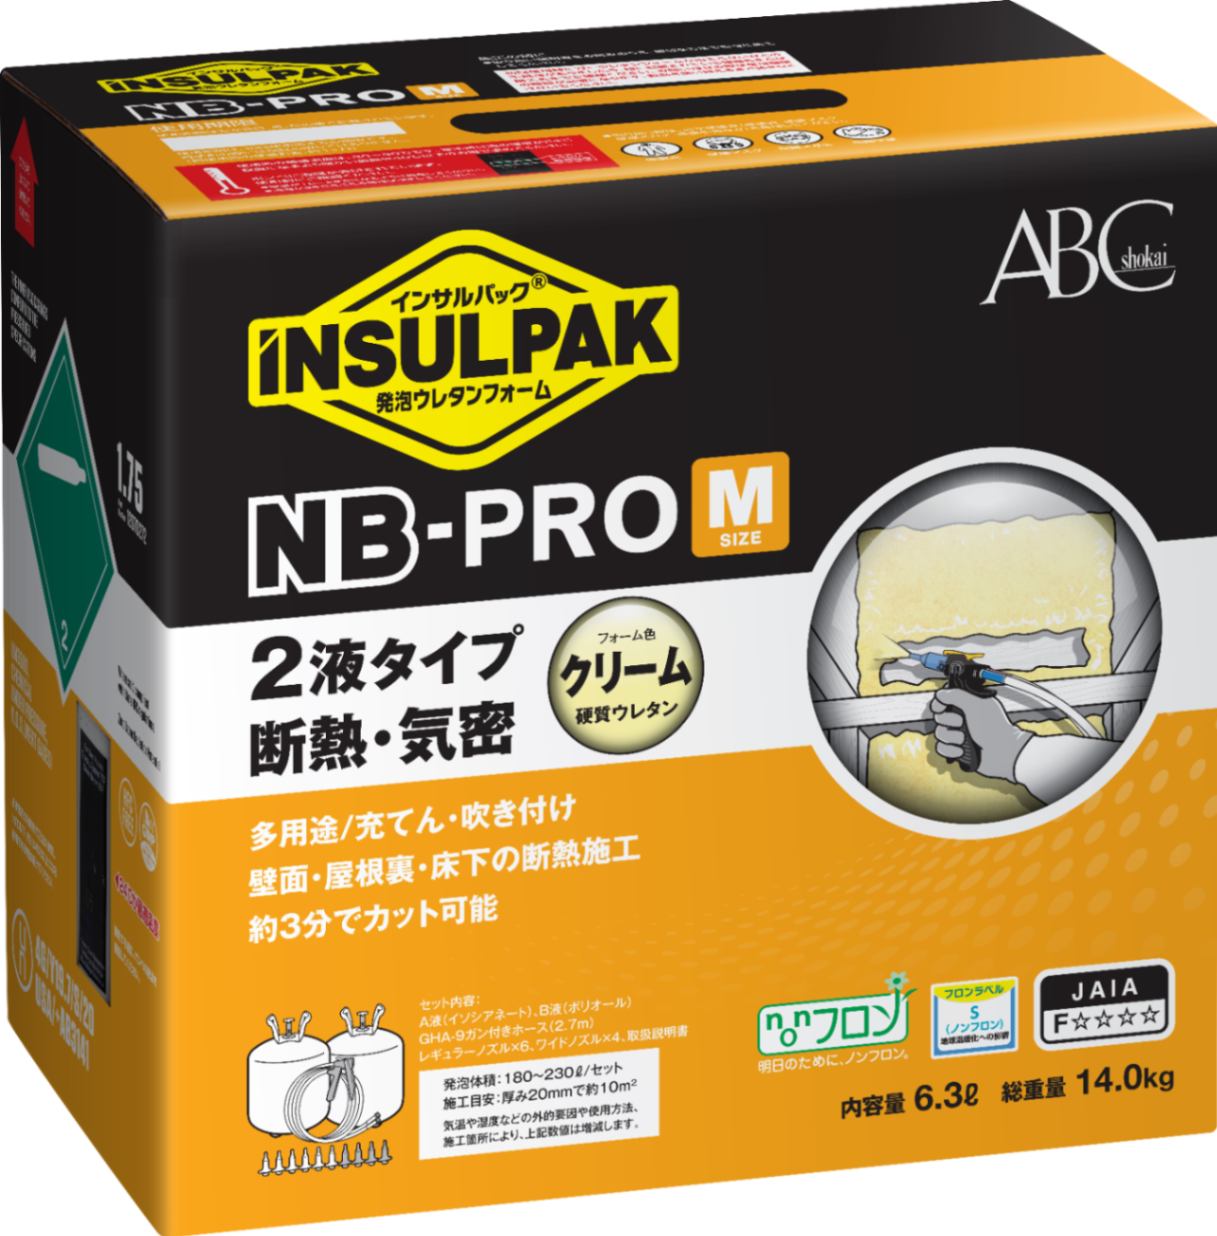 インサルパック NB-PRO/M 2液ノンフロンタイプ NBM 【エービーシー商会